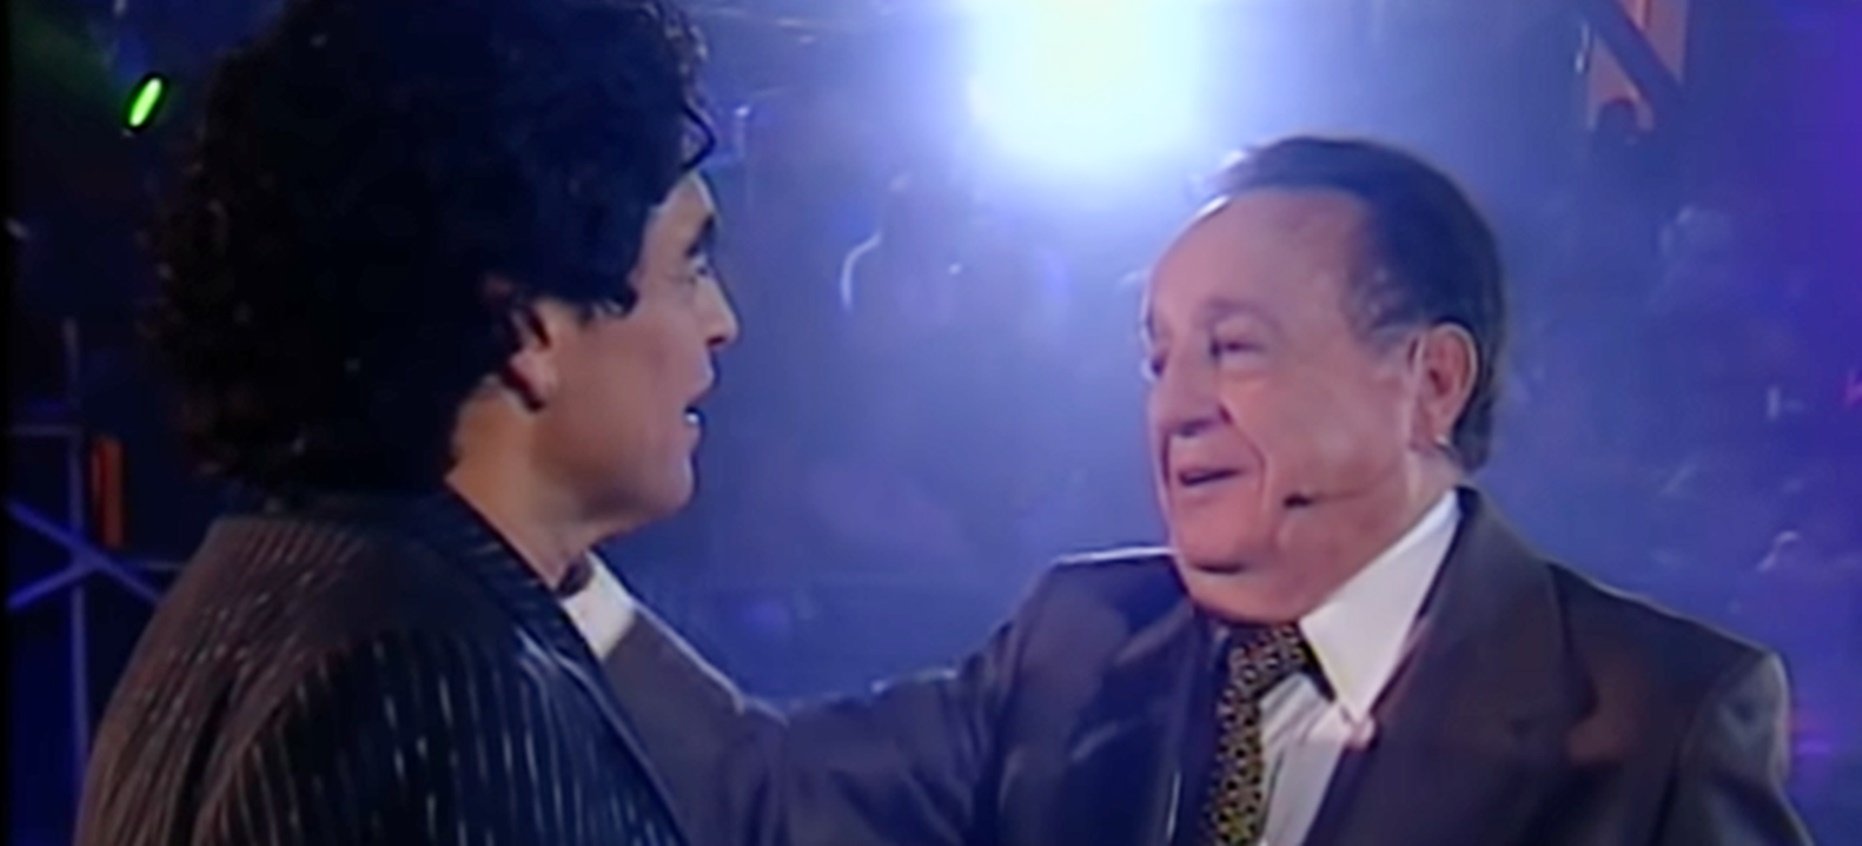 A 8 años de la muerte de Chespirito, esta es la emblemática entrevista que le hizo Maradona